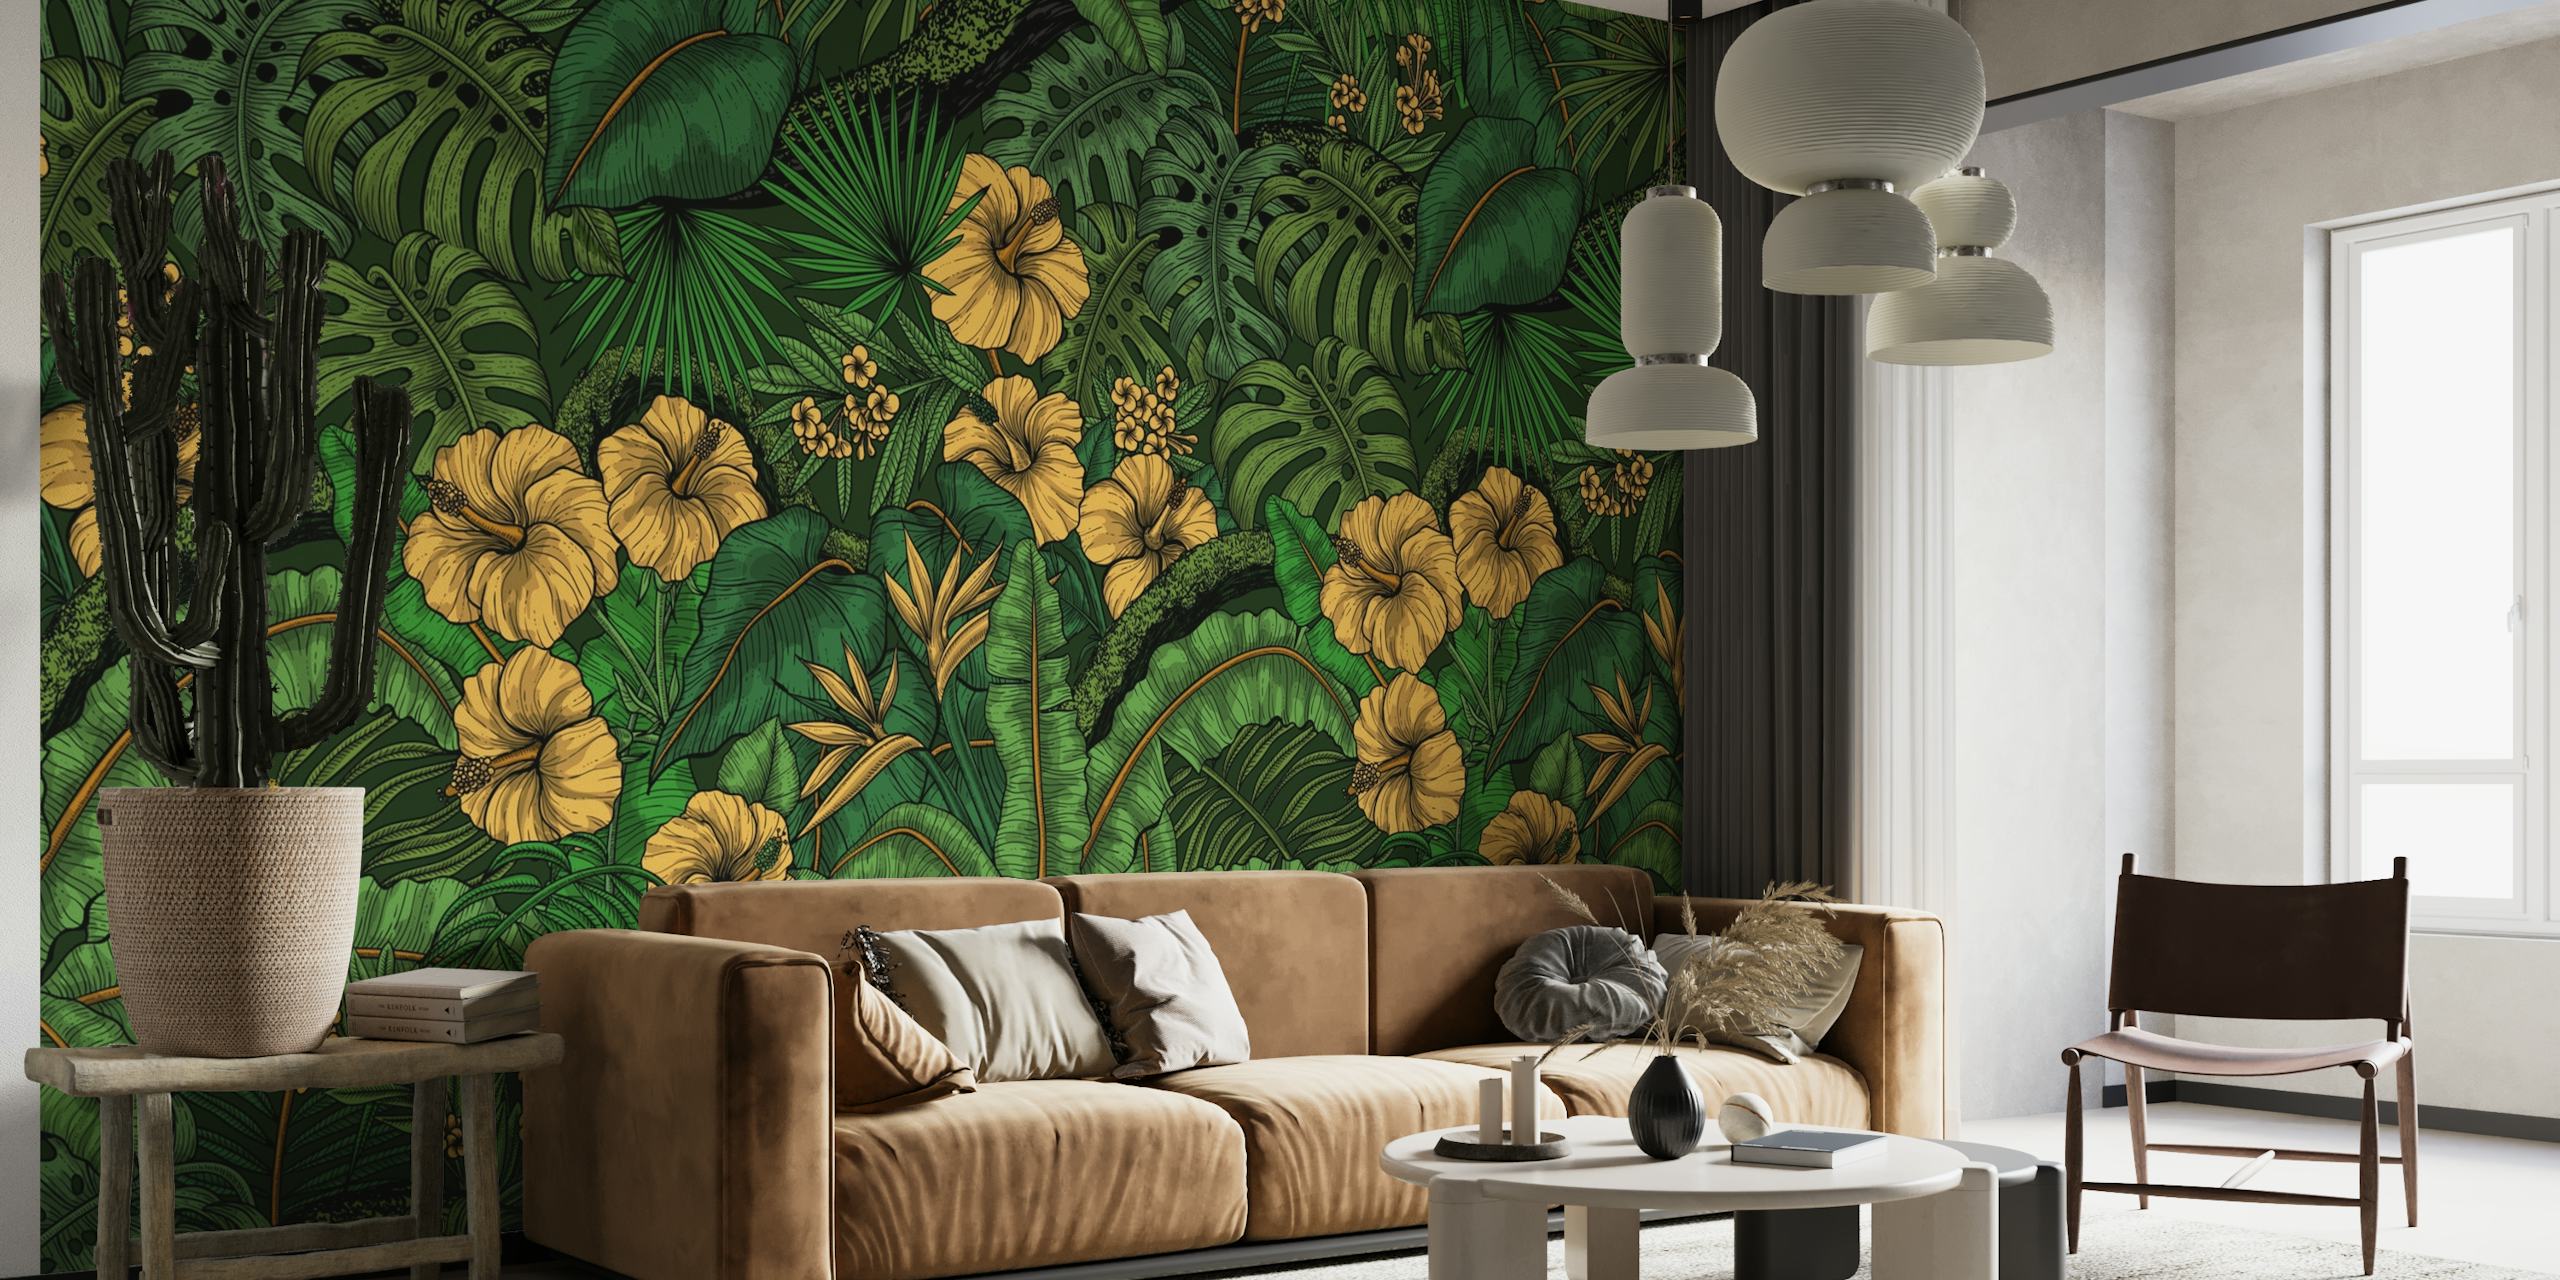 Živahna zidna slika s tropskom florom s bujnim zelenilom i žutim cvjetovima hibiskusa.